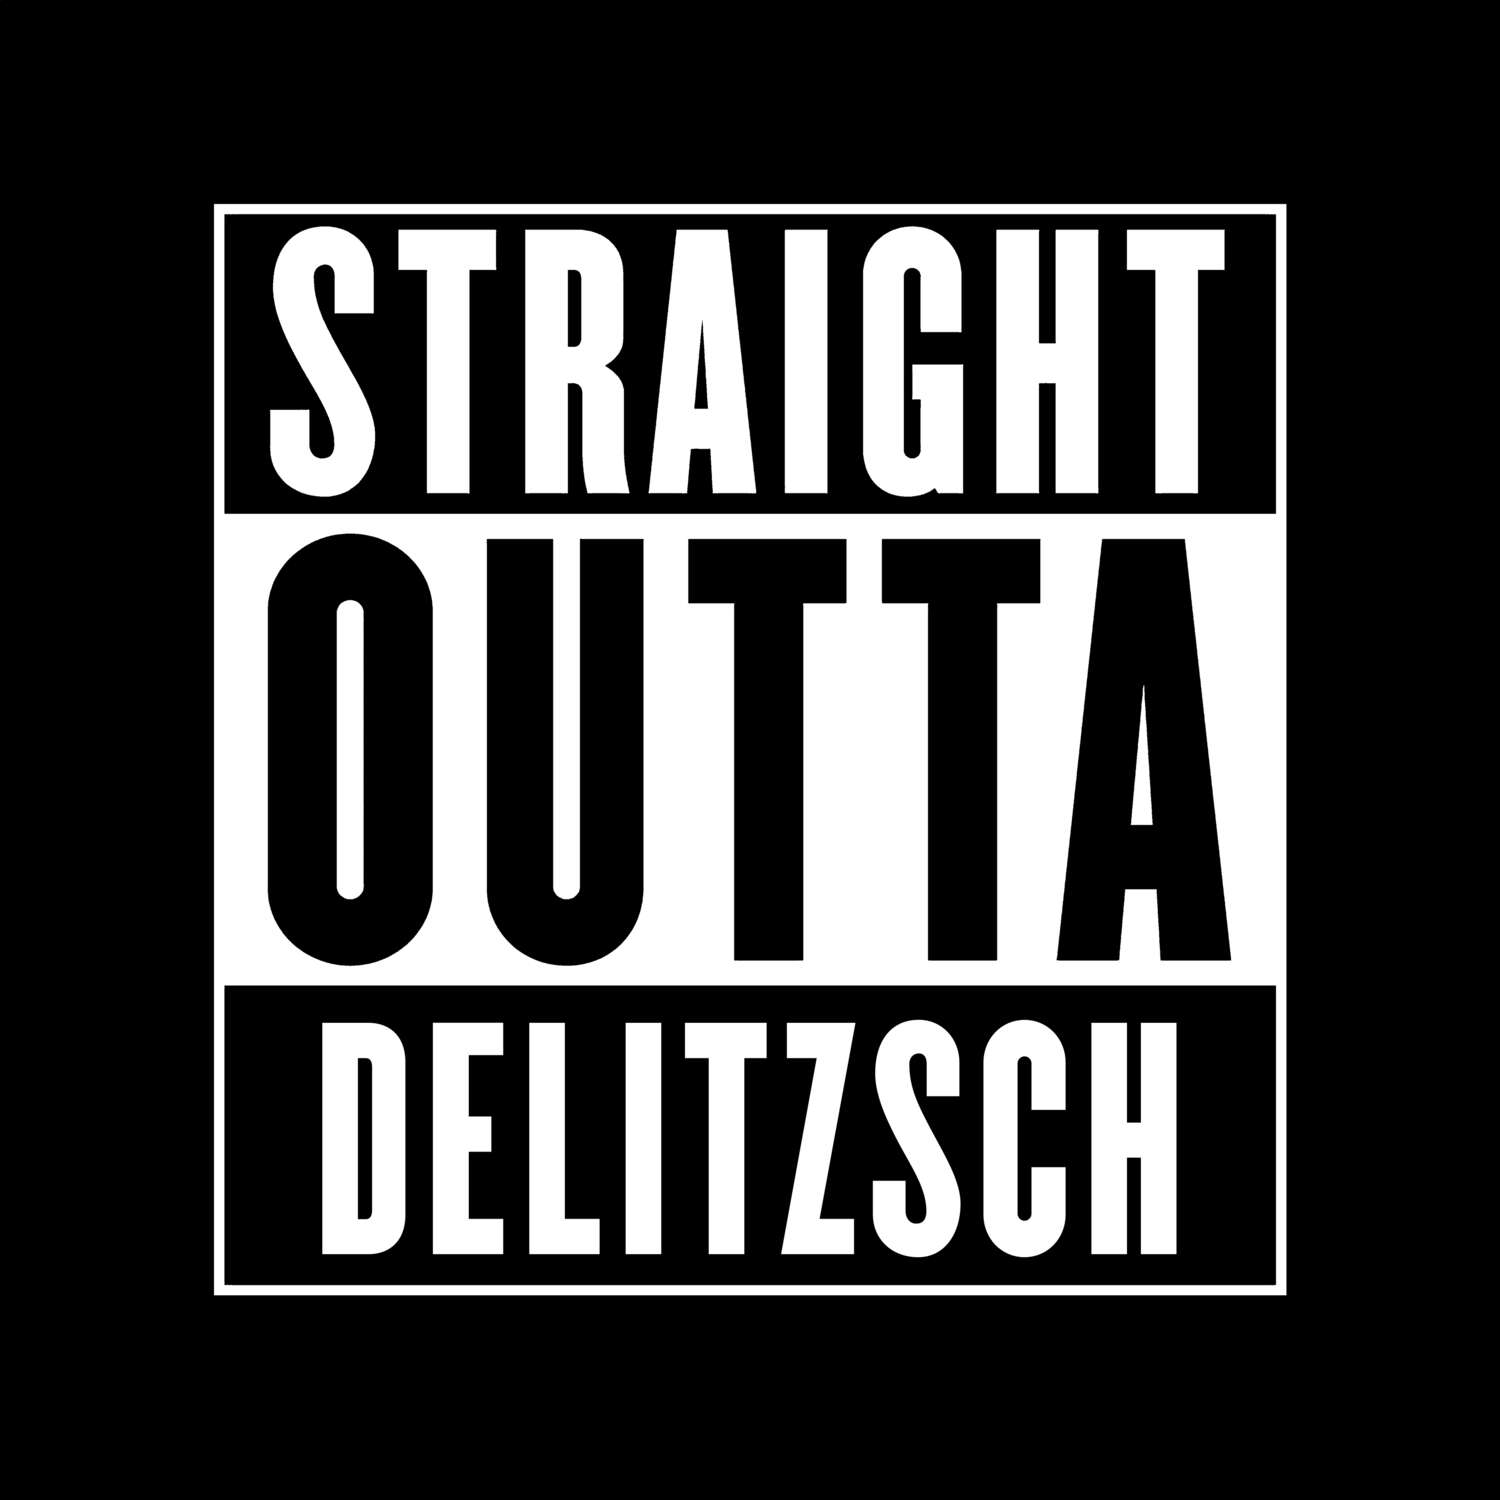 Delitzsch T-Shirt »Straight Outta«